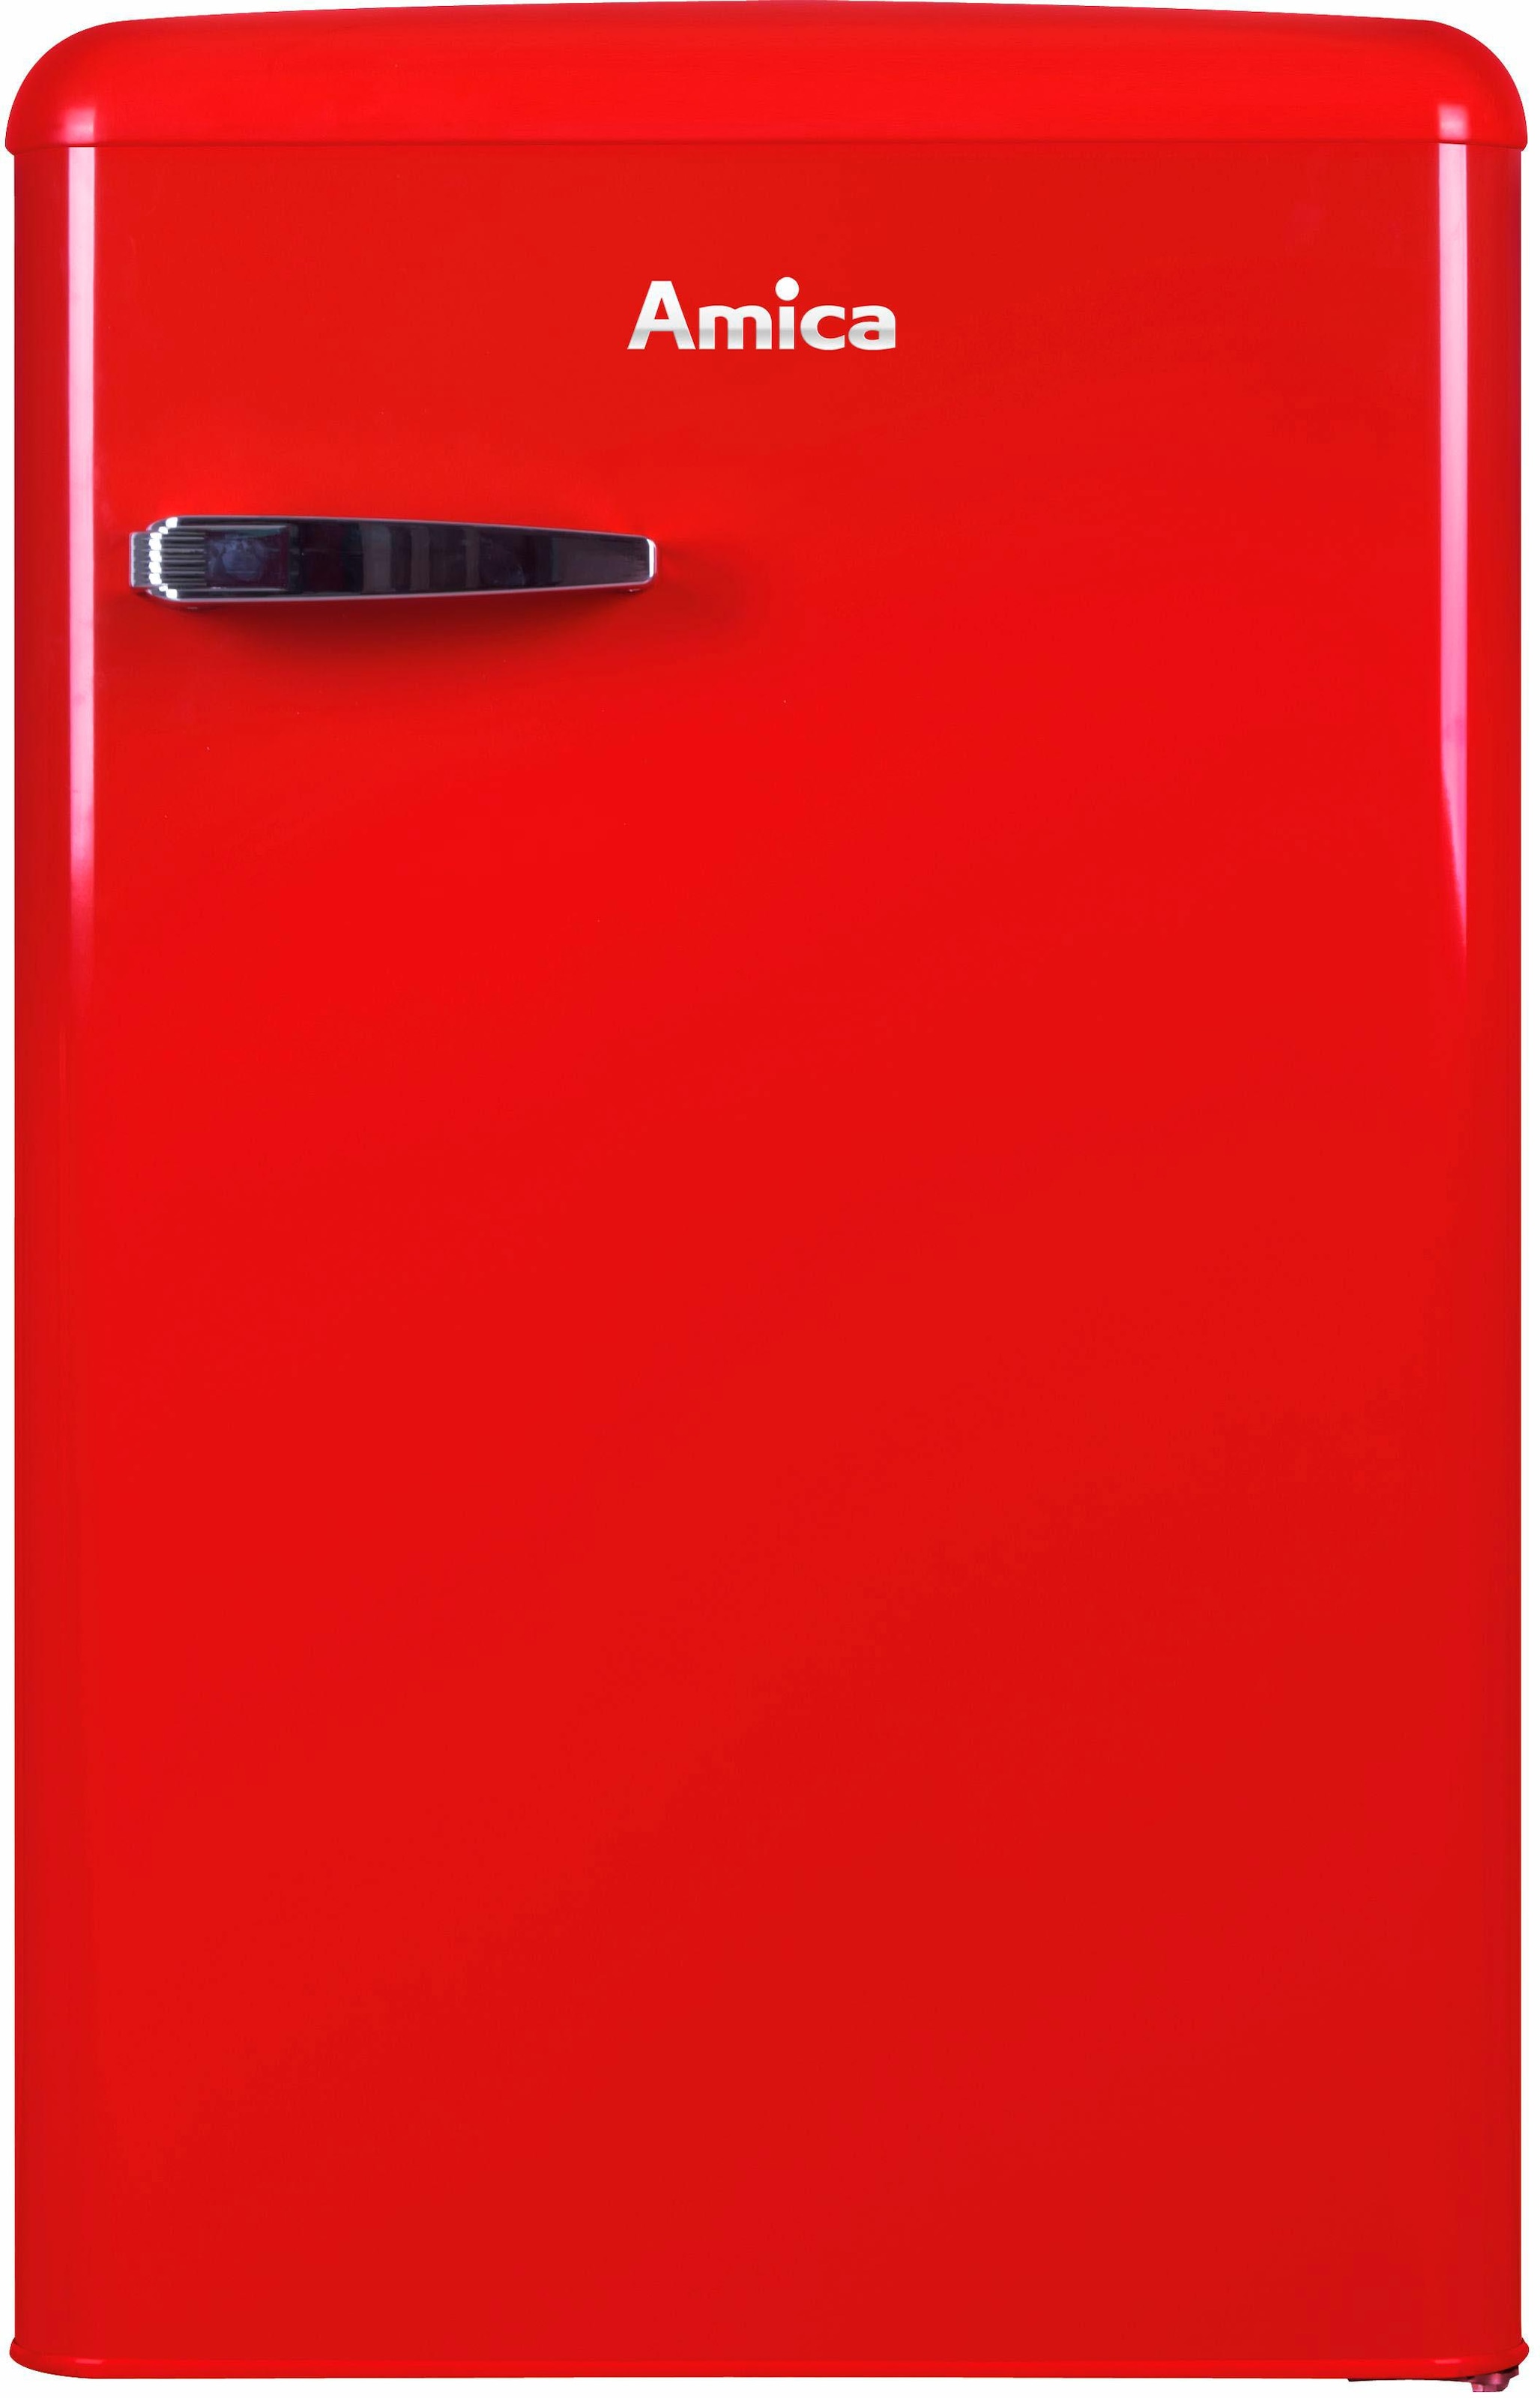 Kühlschrank, Table cm R, 15611 cm mit KS breit 87,5 Jahren Top hoch, Garantie 55 Amica XXL 3